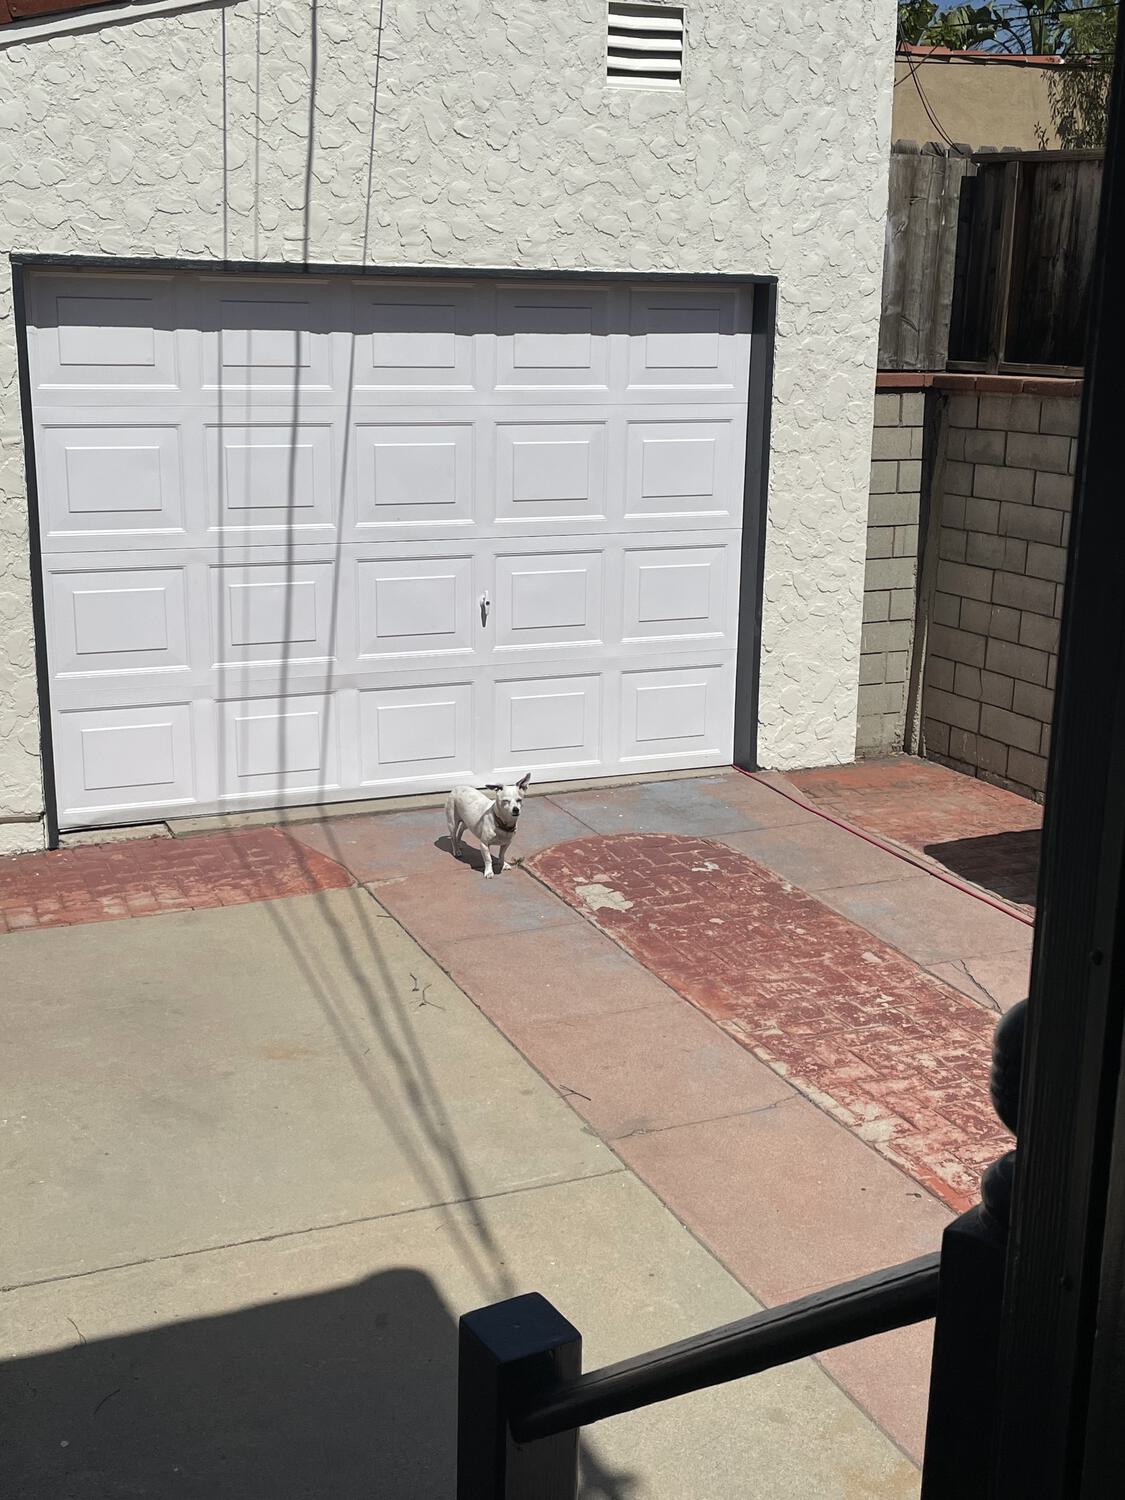 Travis the dog standing in front of the garage door, enjoying the sun